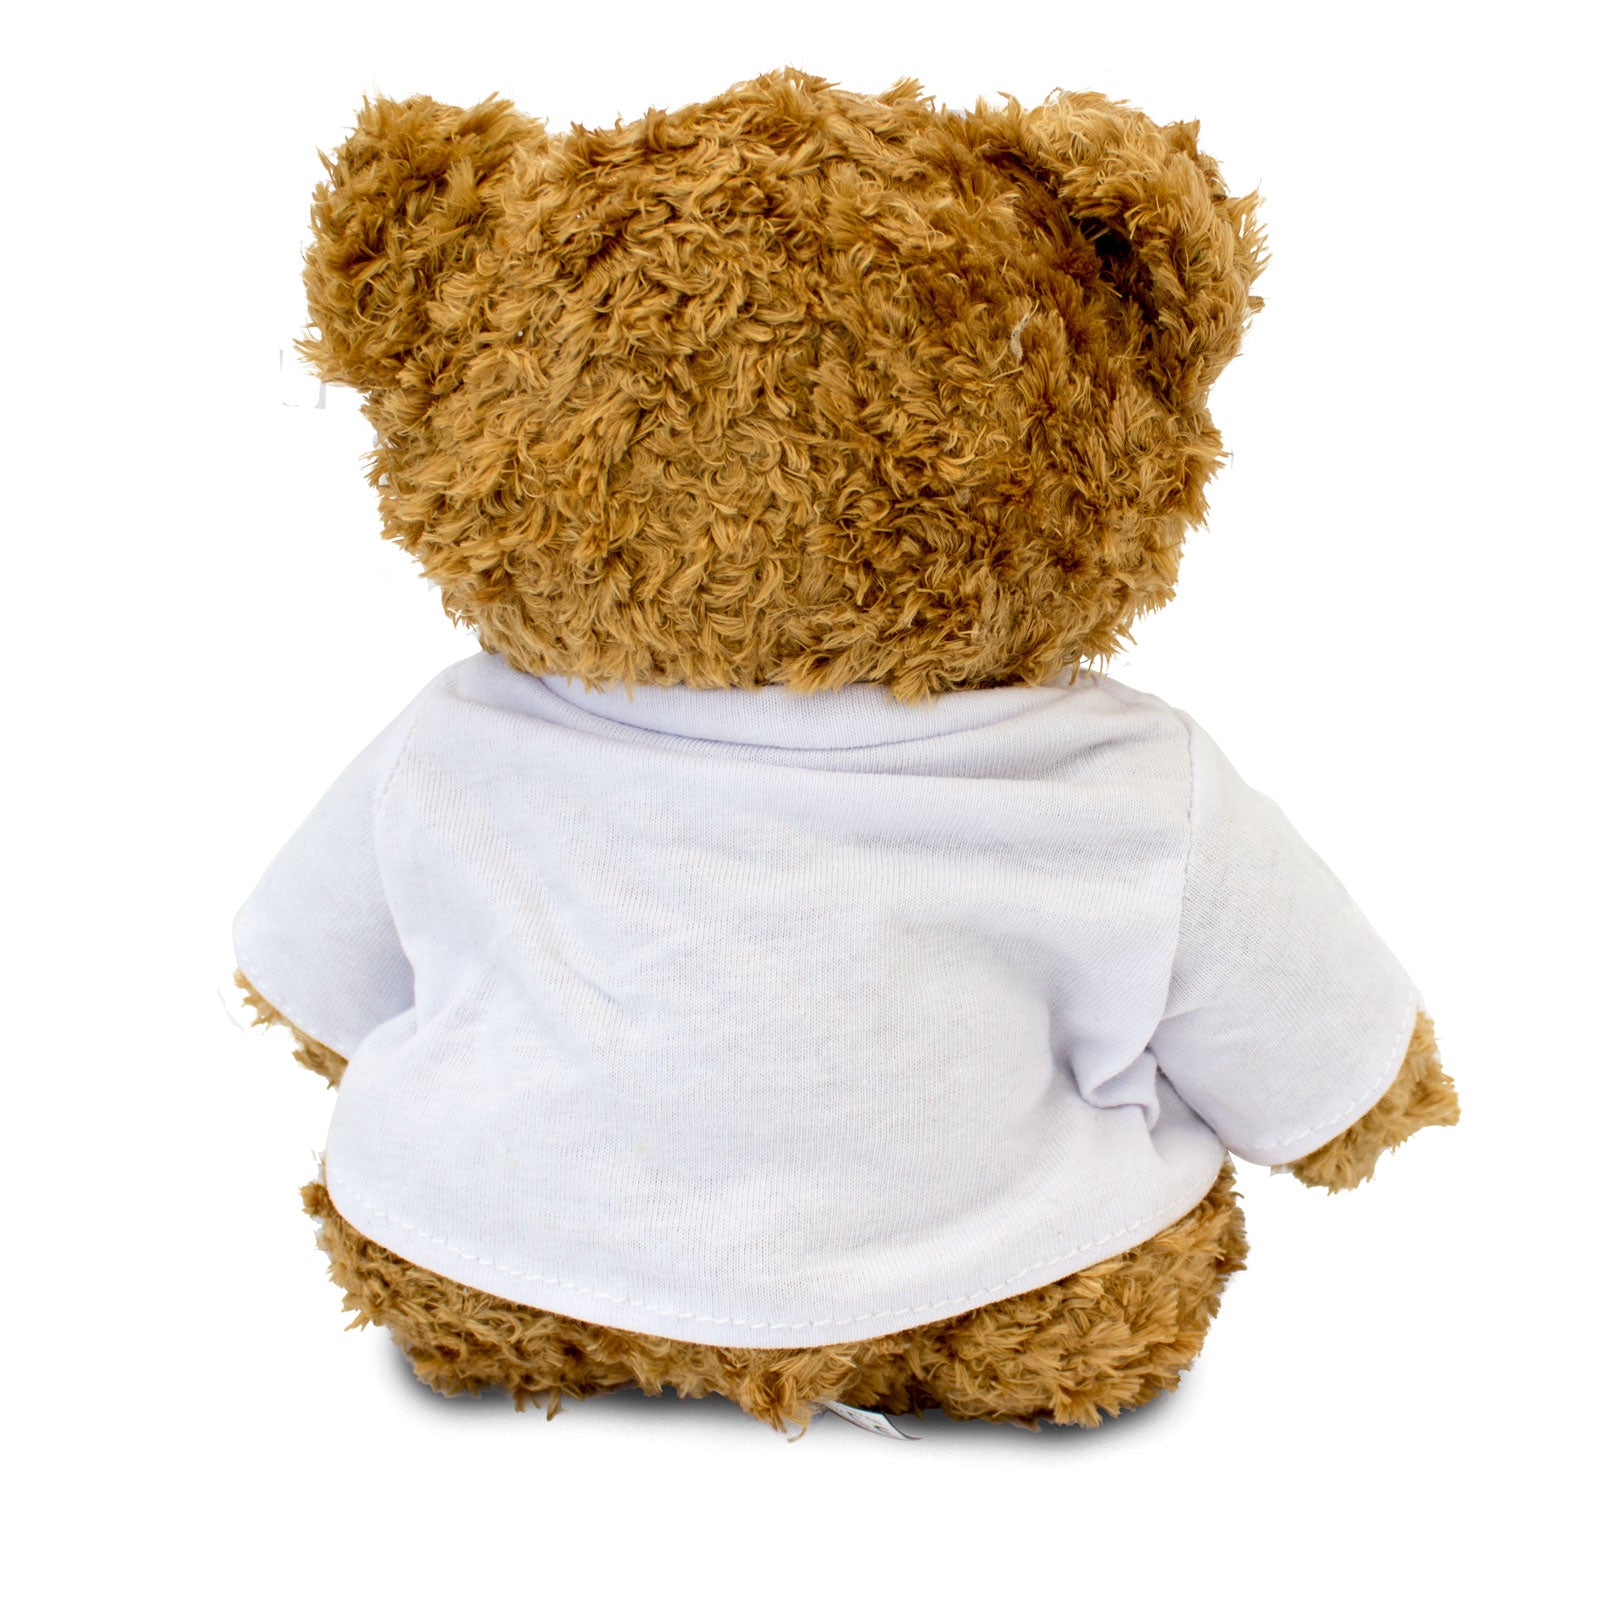 I Love Acting - Teddy Bear